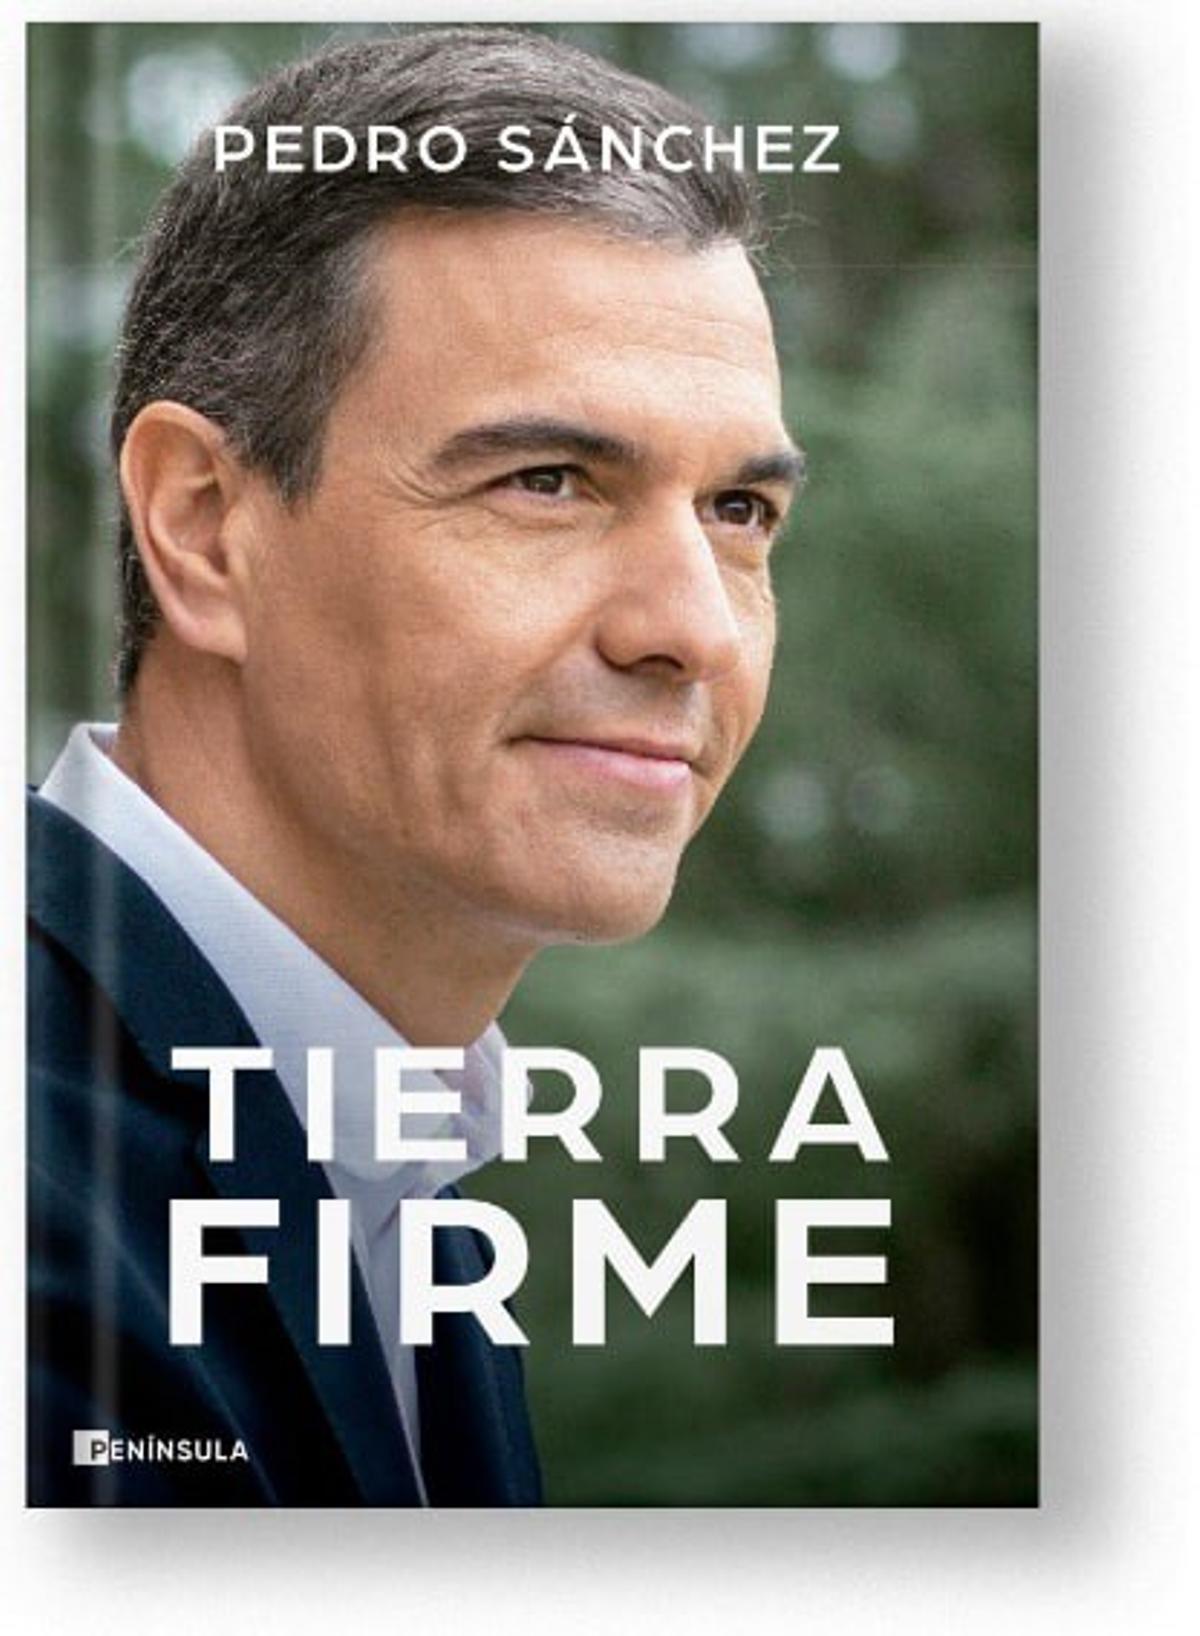 PEDRO SÁNCHEZ NUEVO LIBRO  Pedro Sánchez publica 'Tierra firme', su  segundo libro como presidente en ejercicio